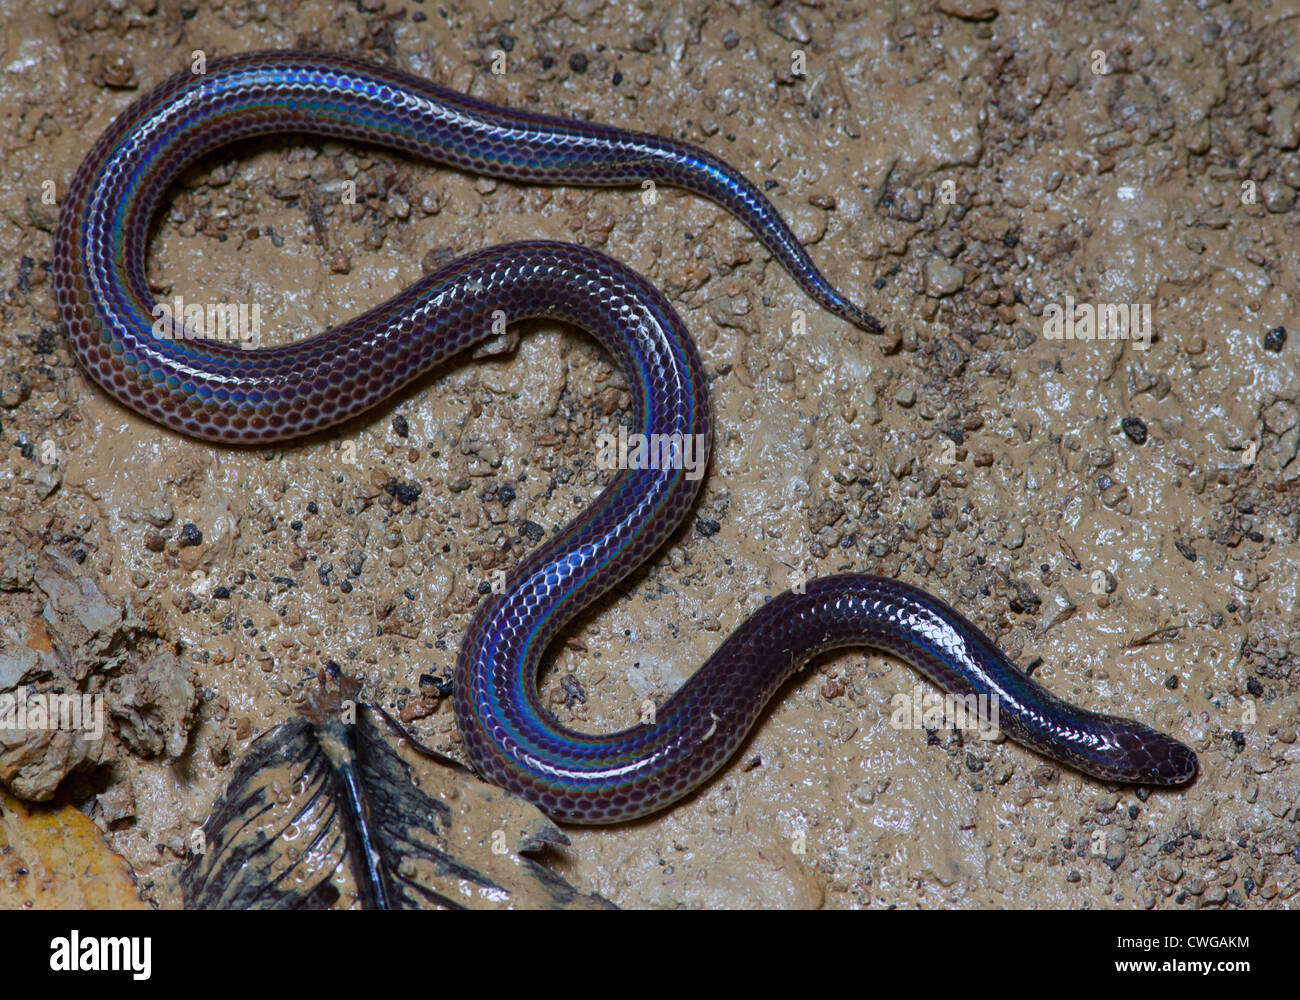 Schmidt's Reed Snake, Calamaria schmidti, Sabah, Malaysia Stock Photo